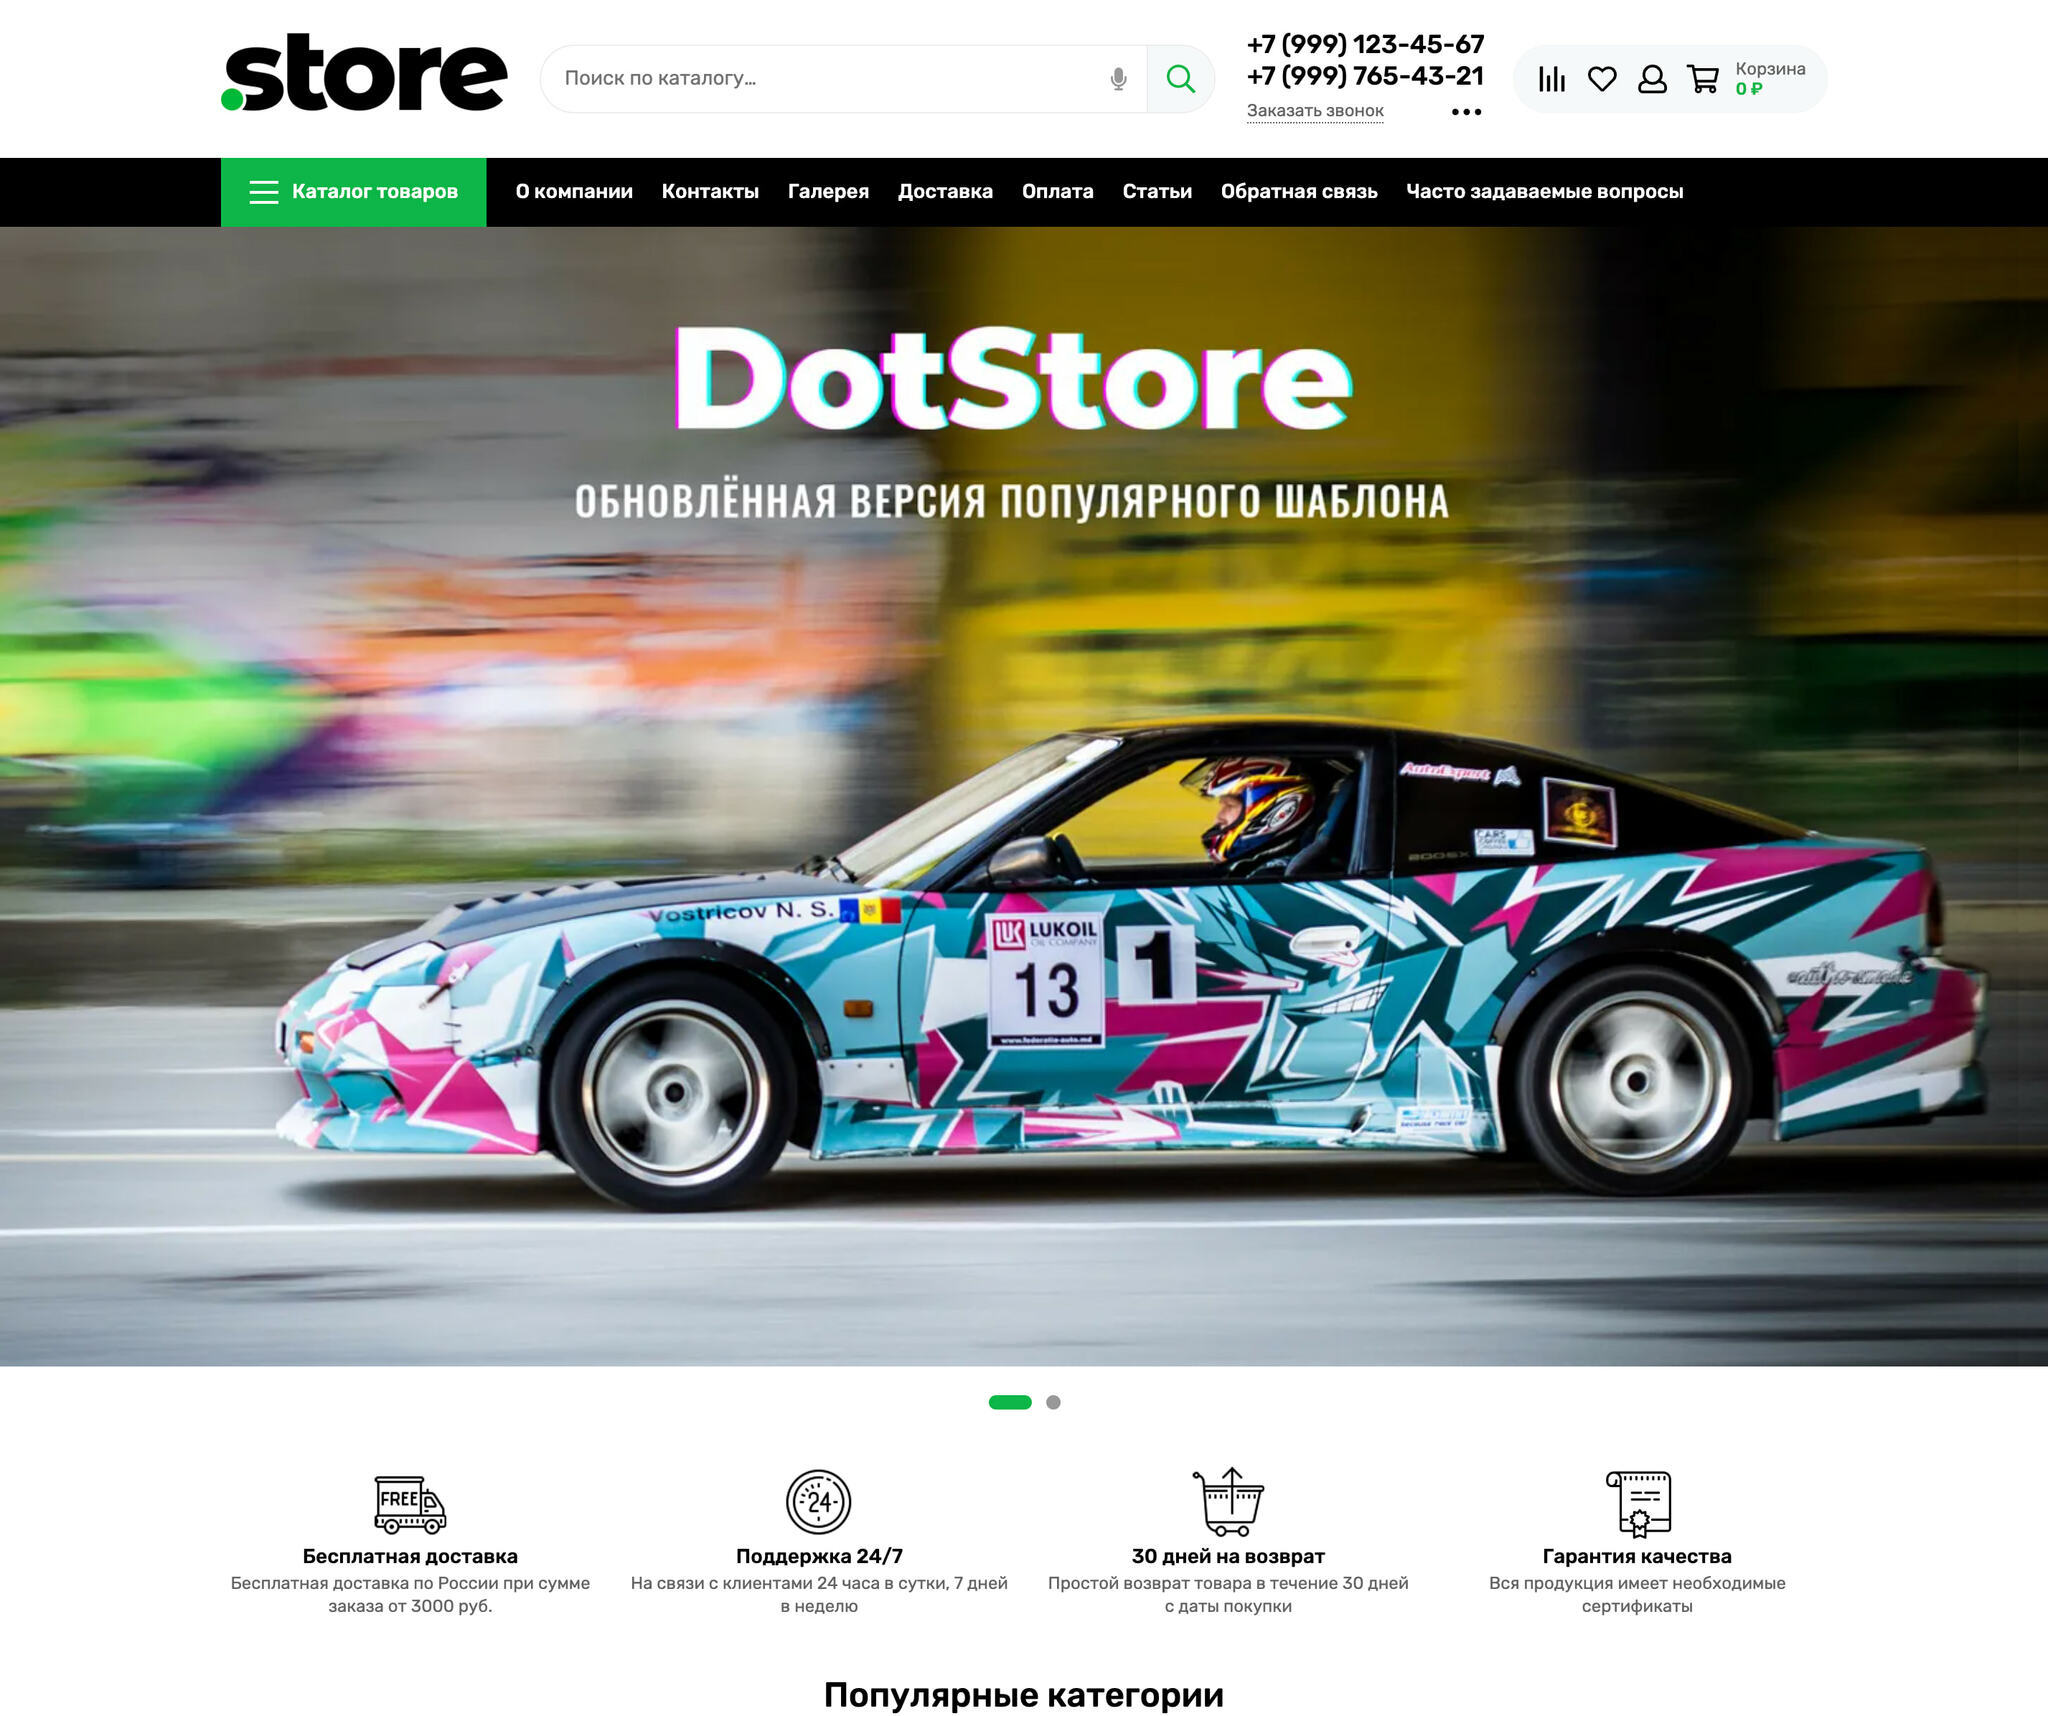 Шаблон интернет магазина - Dotstore